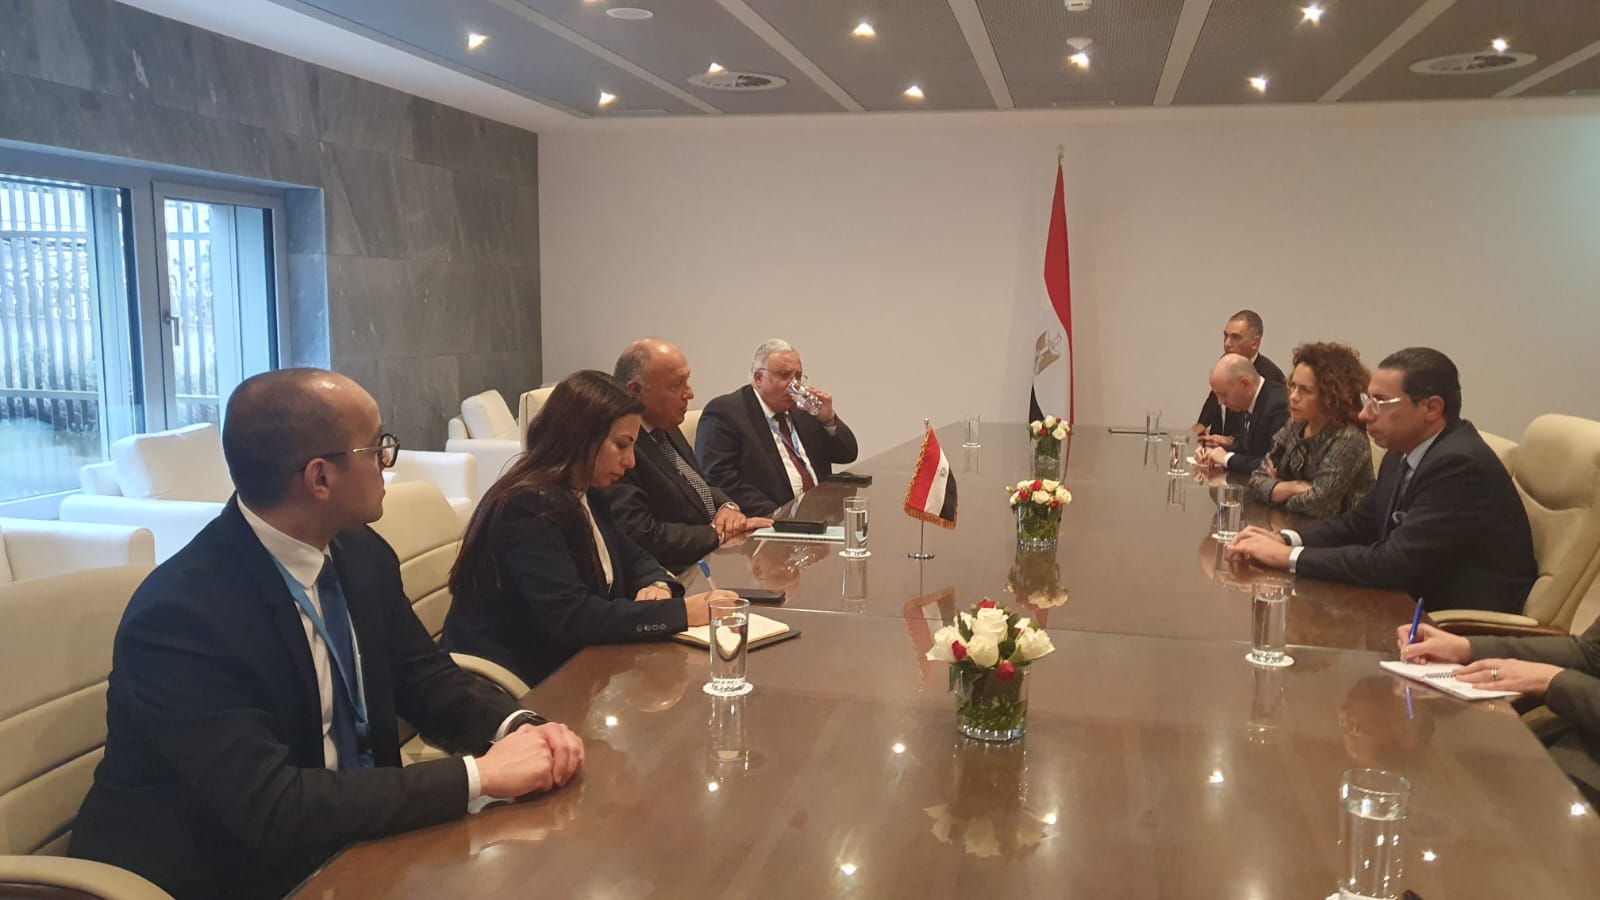 وزيرا خارجية مصر وقبرص يؤكدان الالتزام المتبادل بترجمة التوافق السياسي والعلاقات المتميزة التي تجمع البلدين